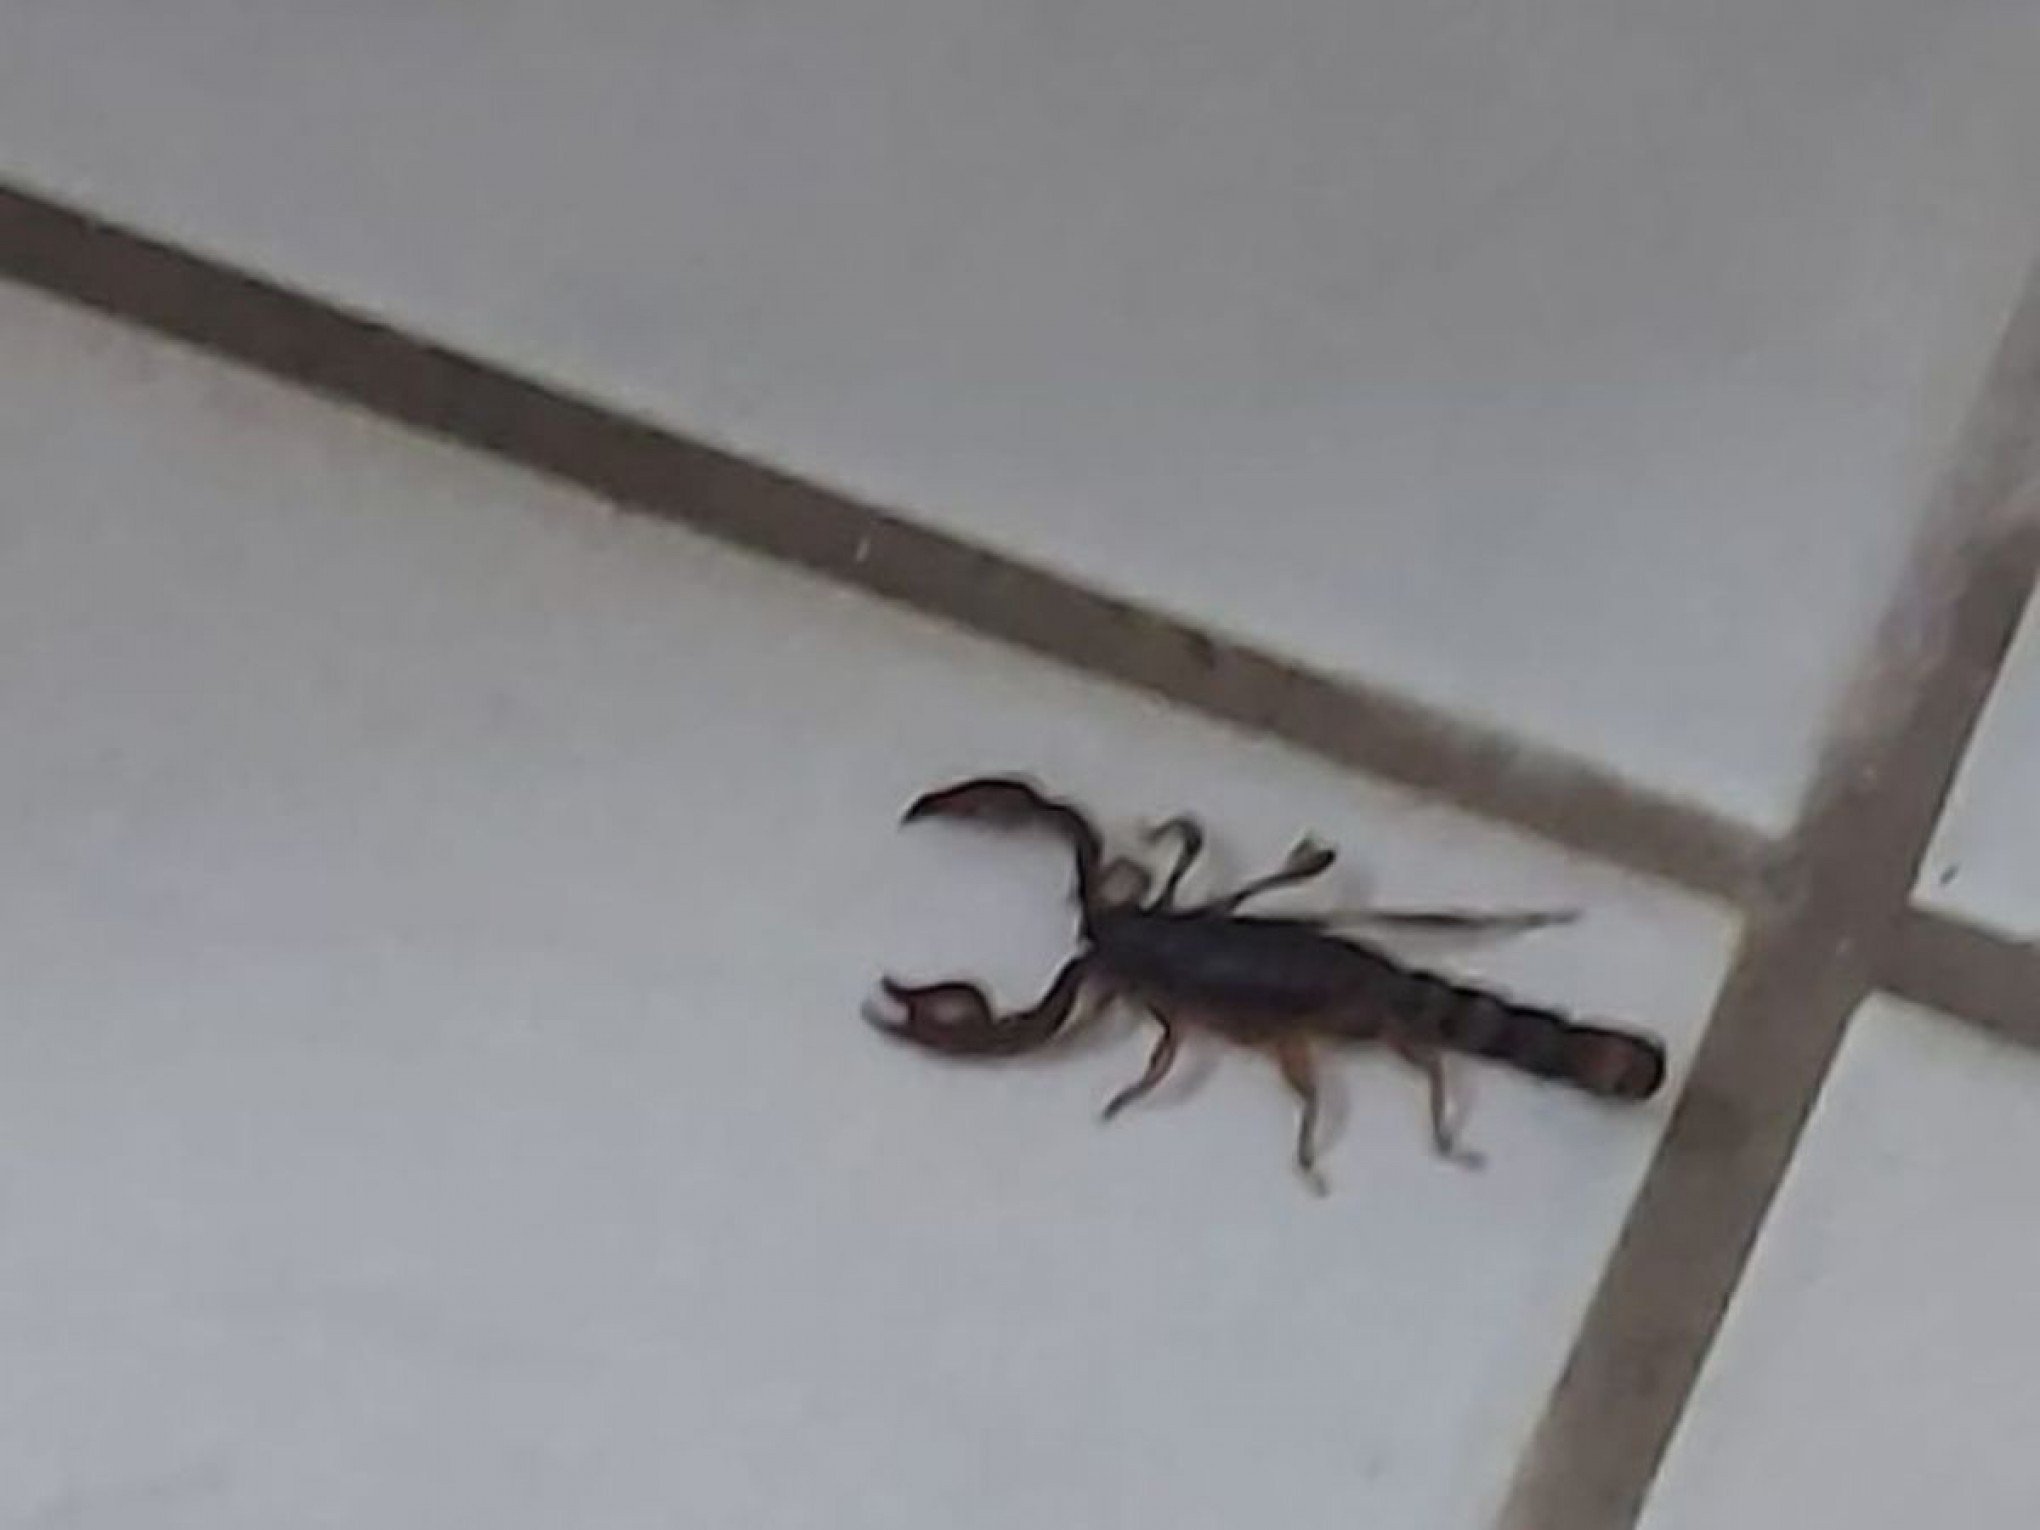 Escorpião é encontrado dentro de casa na região; saiba como identificar cada tipo e o que fazer caso encontre o mais agressivo